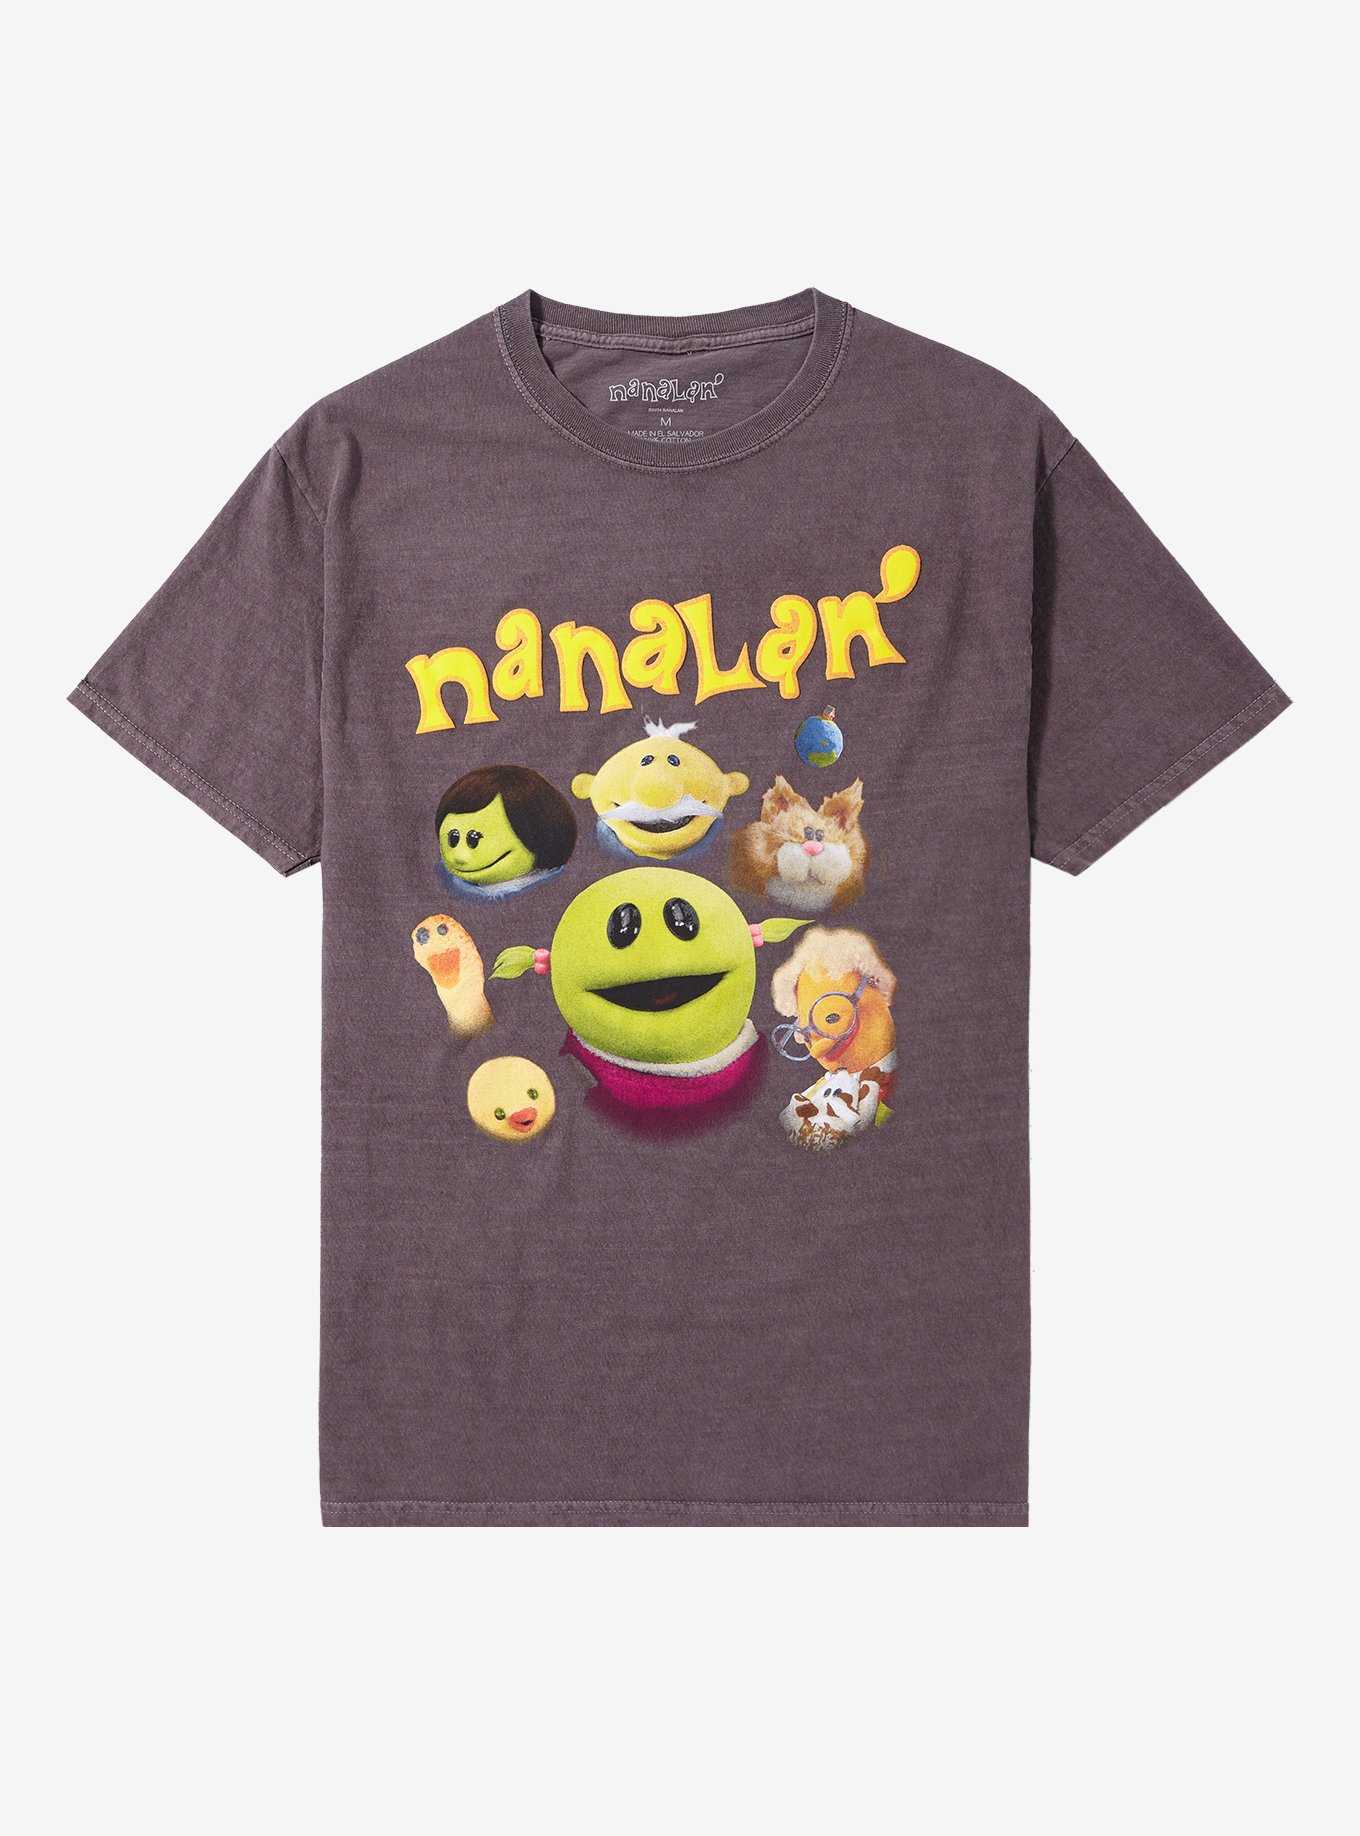 Nanalan' Collage T-Shirt, , hi-res